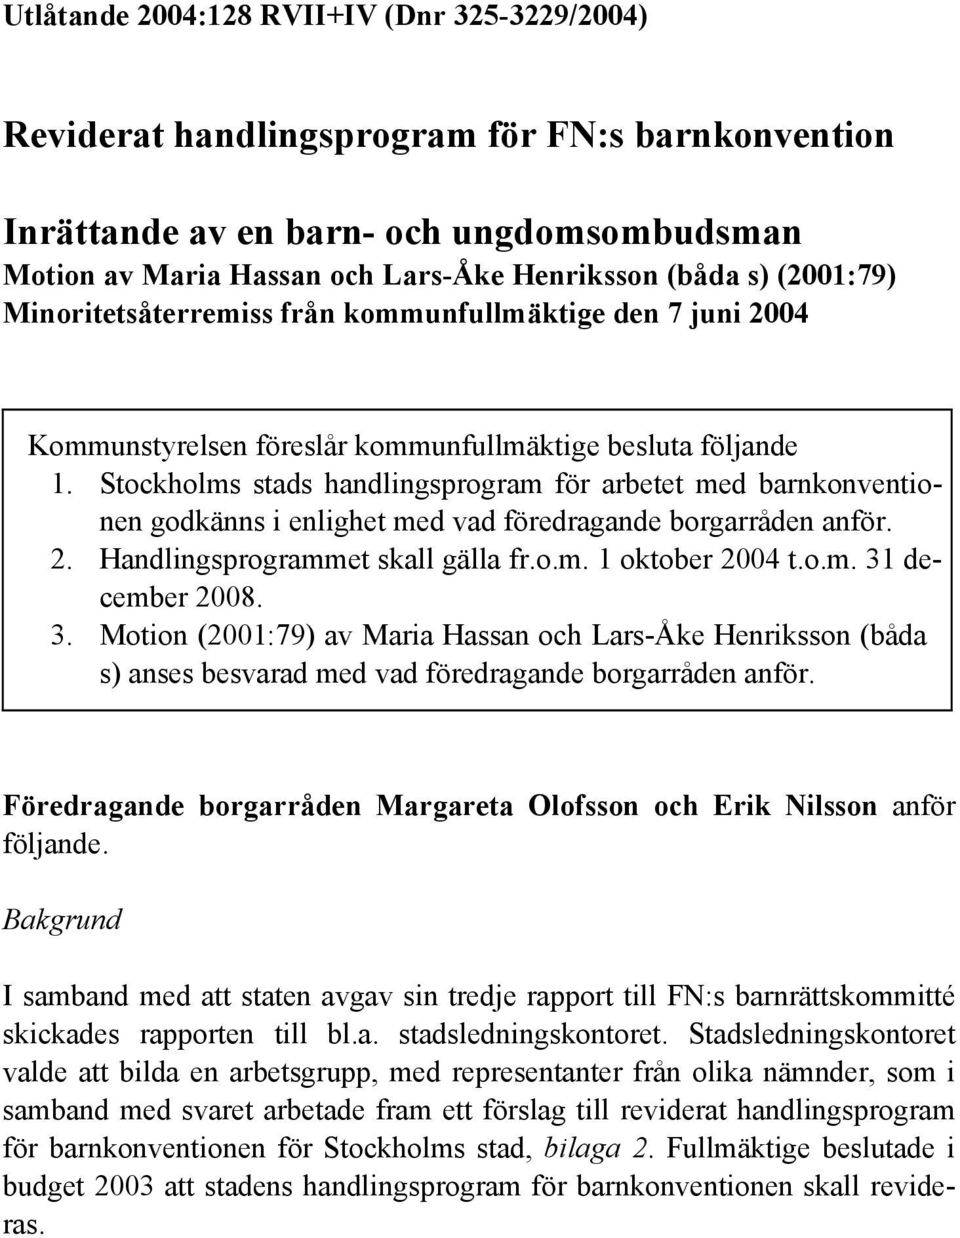 Stockholms stads handlingsprogram för arbetet med barnkonventionen godkänns i enlighet med vad föredragande borgarråden anför. 2. Handlingsprogrammet skall gälla fr.o.m. 1 oktober 2004 t.o.m. 31 december 2008.